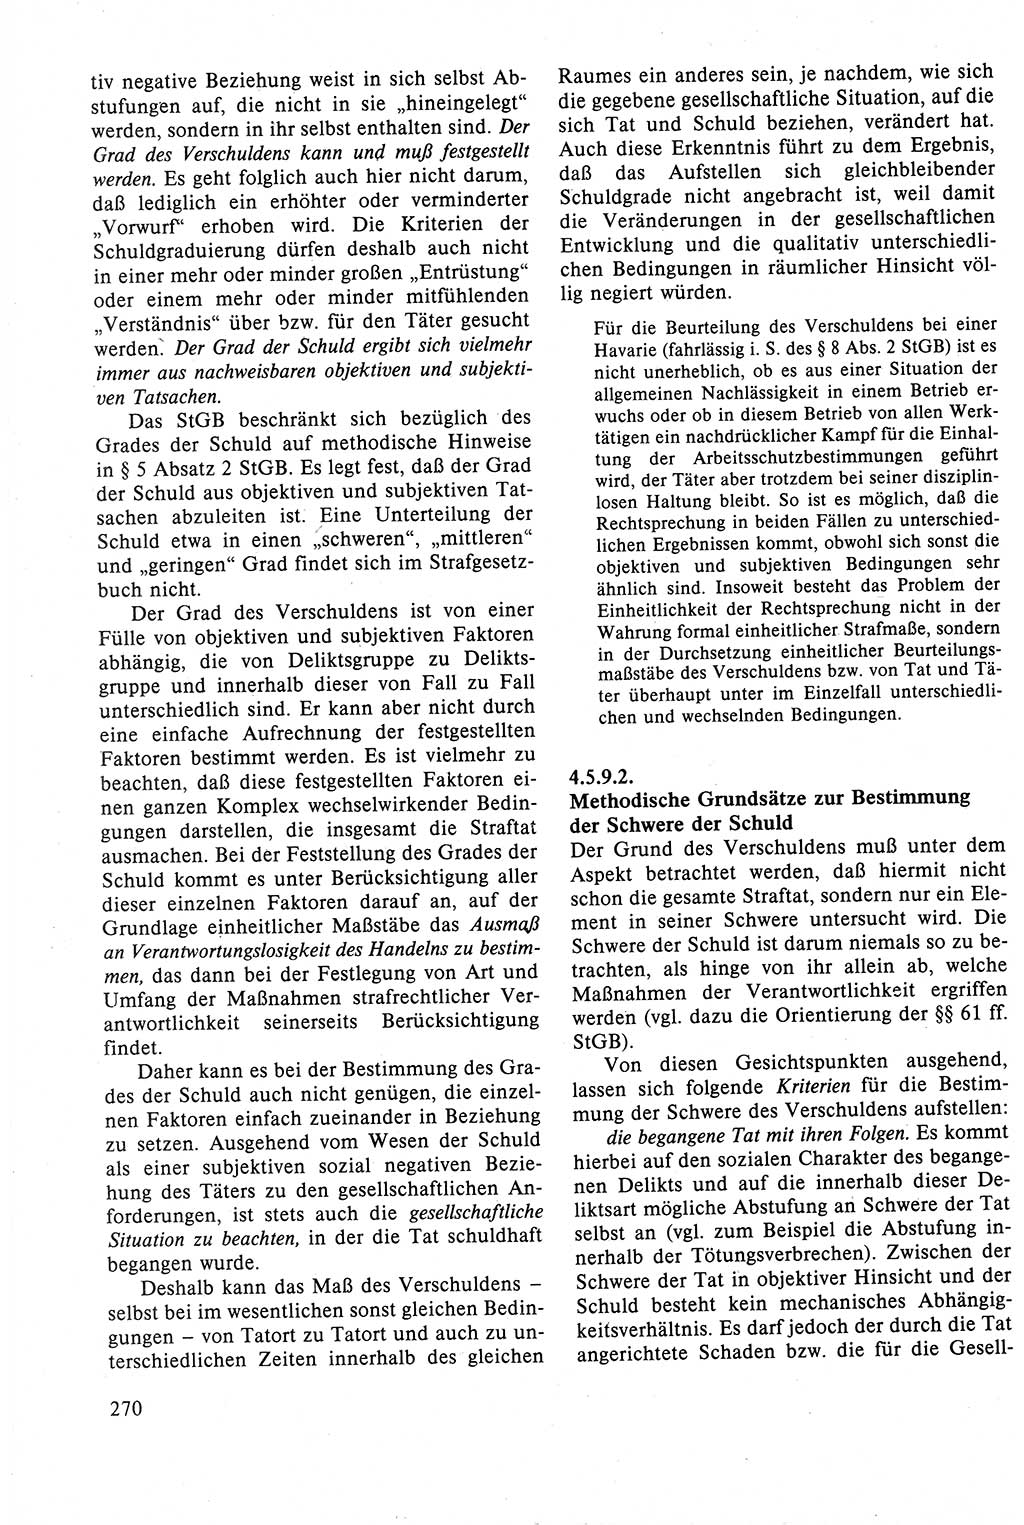 Strafrecht der DDR (Deutsche Demokratische Republik), Lehrbuch 1988, Seite 270 (Strafr. DDR Lb. 1988, S. 270)